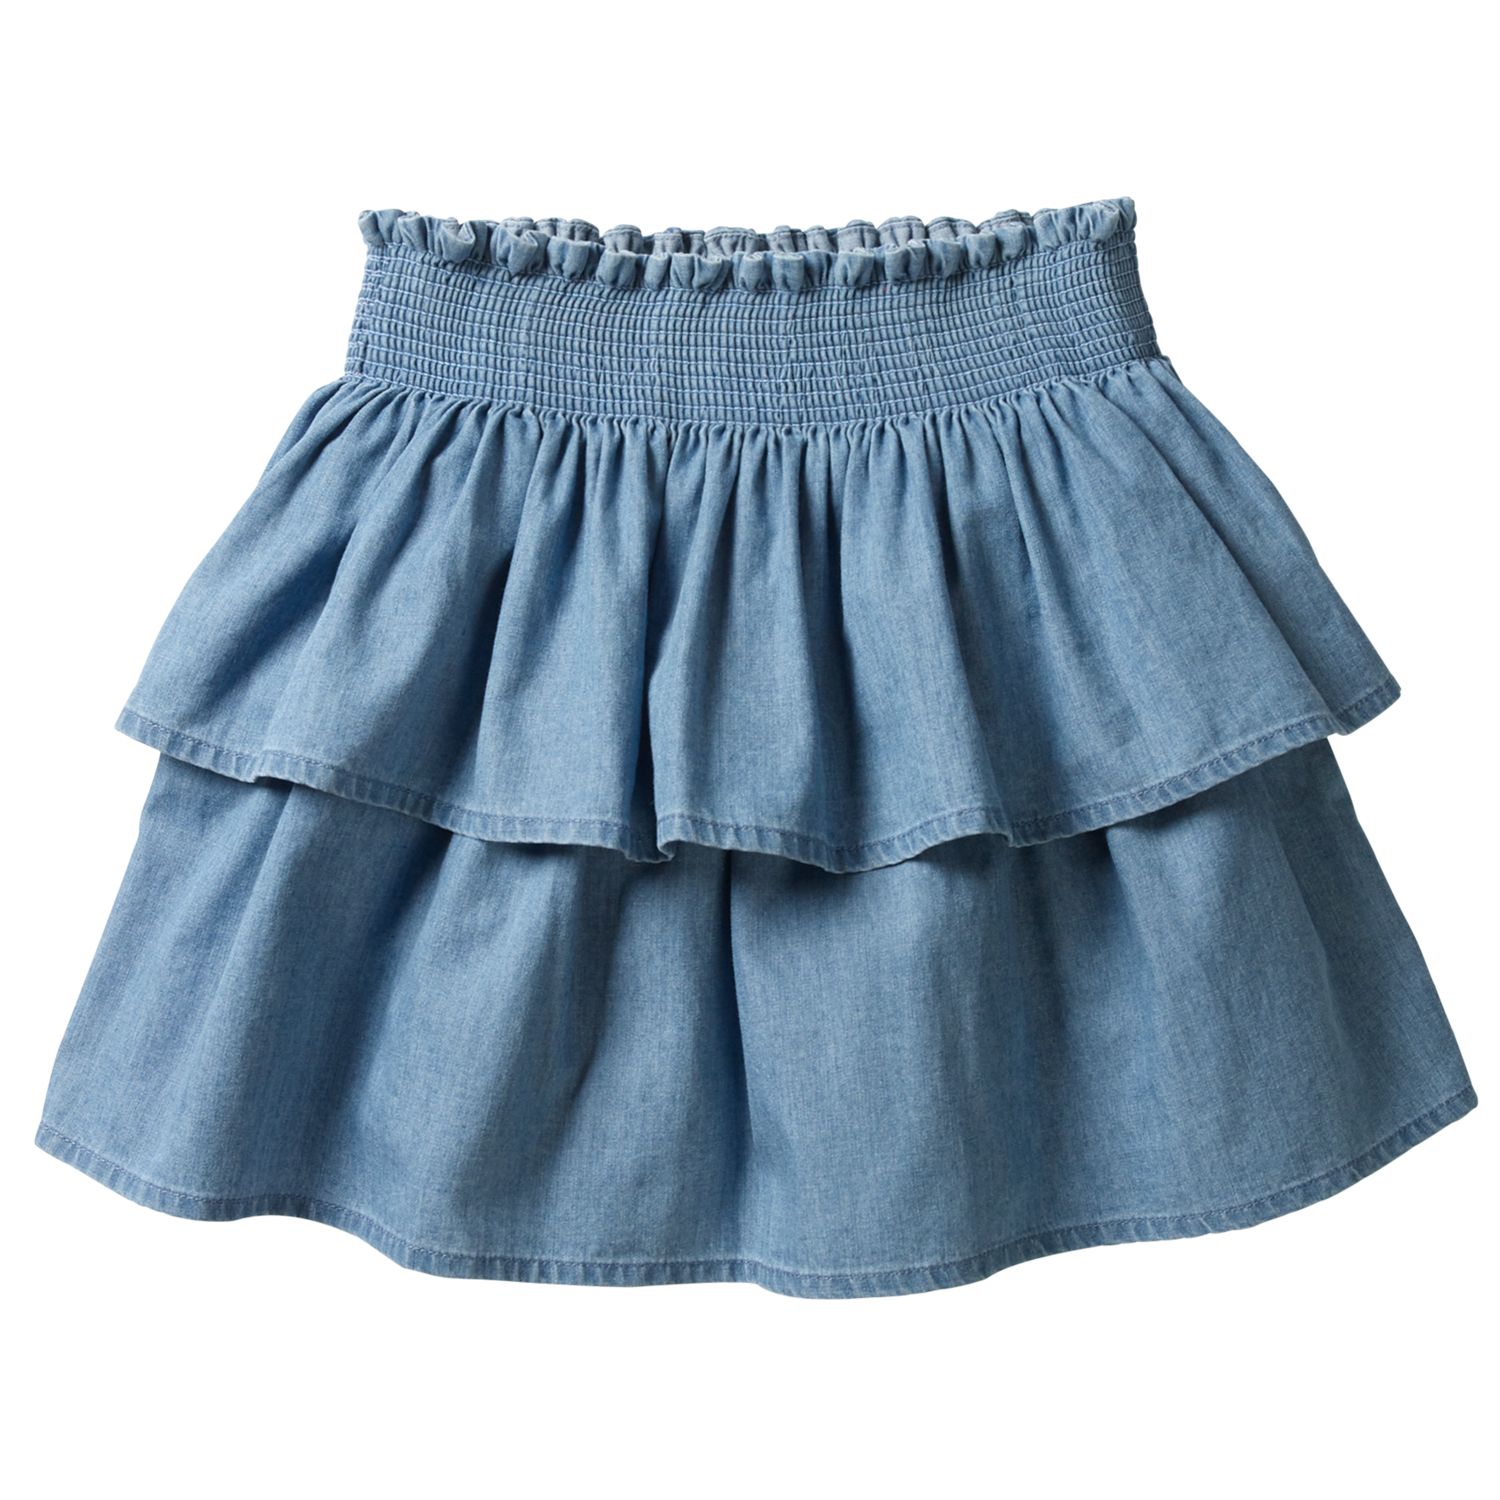 Mini Boden Girls' Ruffled Denim Skirt, Blue